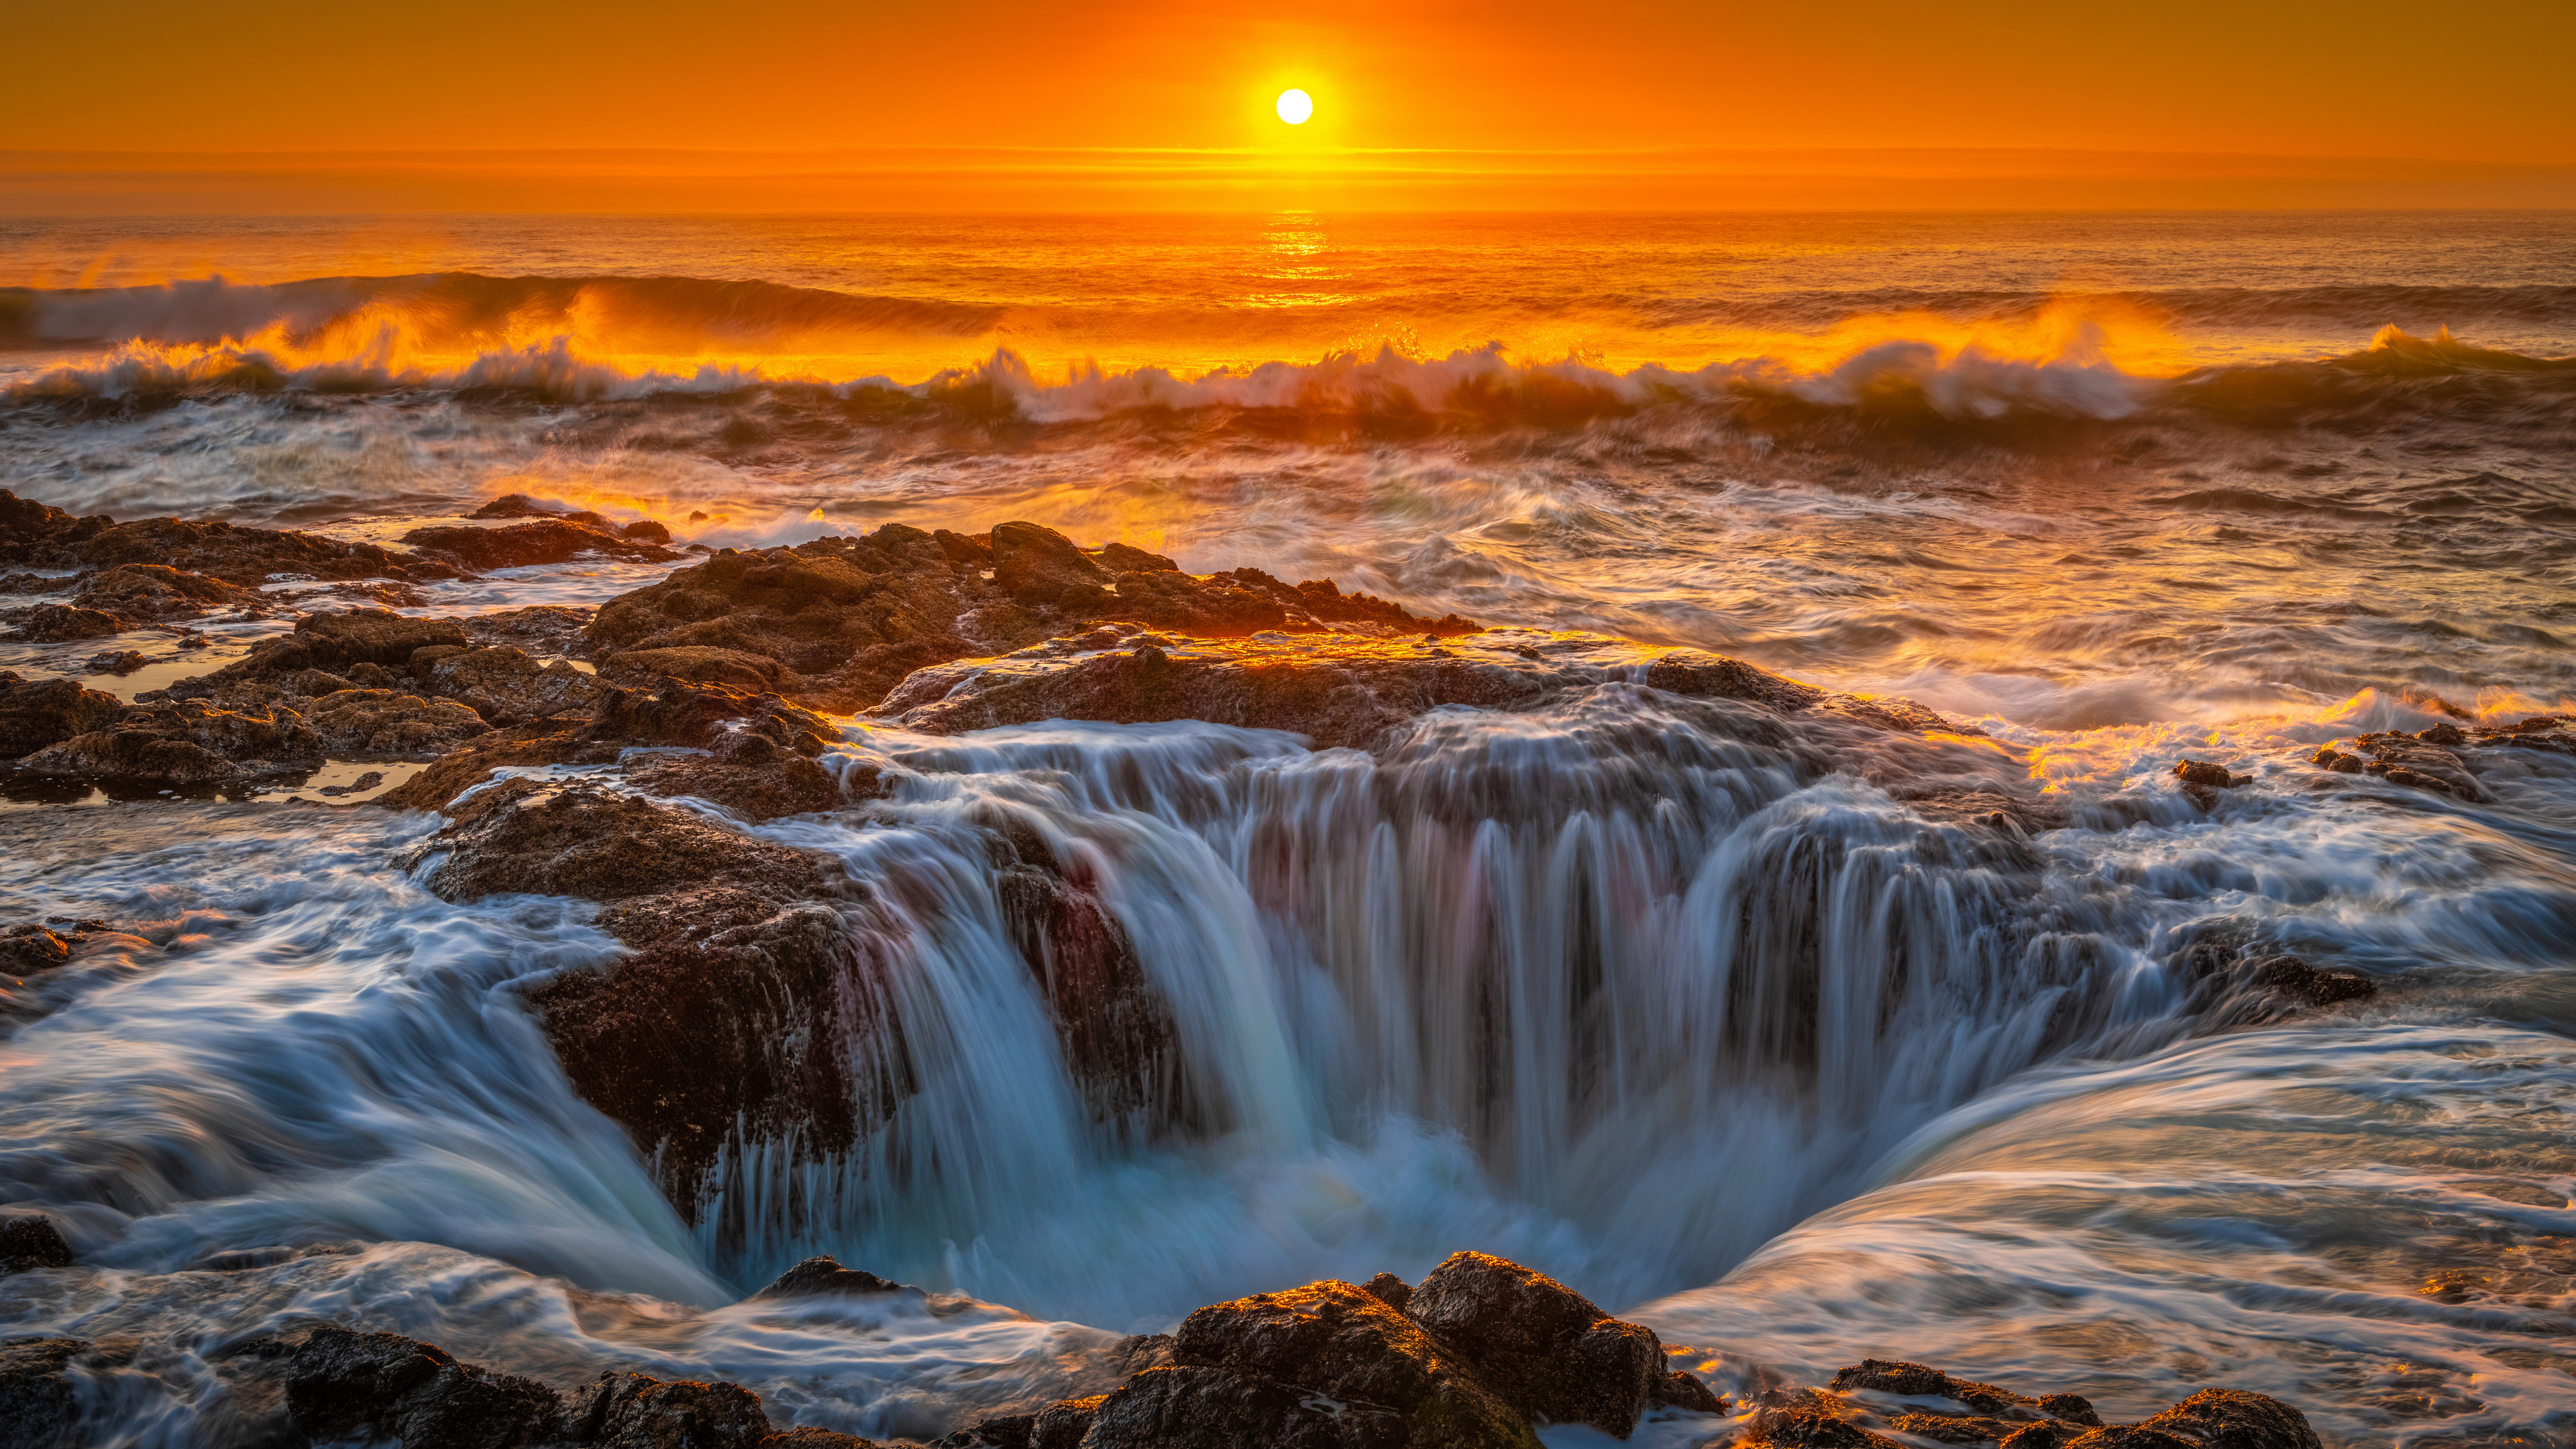 USA Sea Coast Waves Sunset Sky Nature Rocks 3840x2160